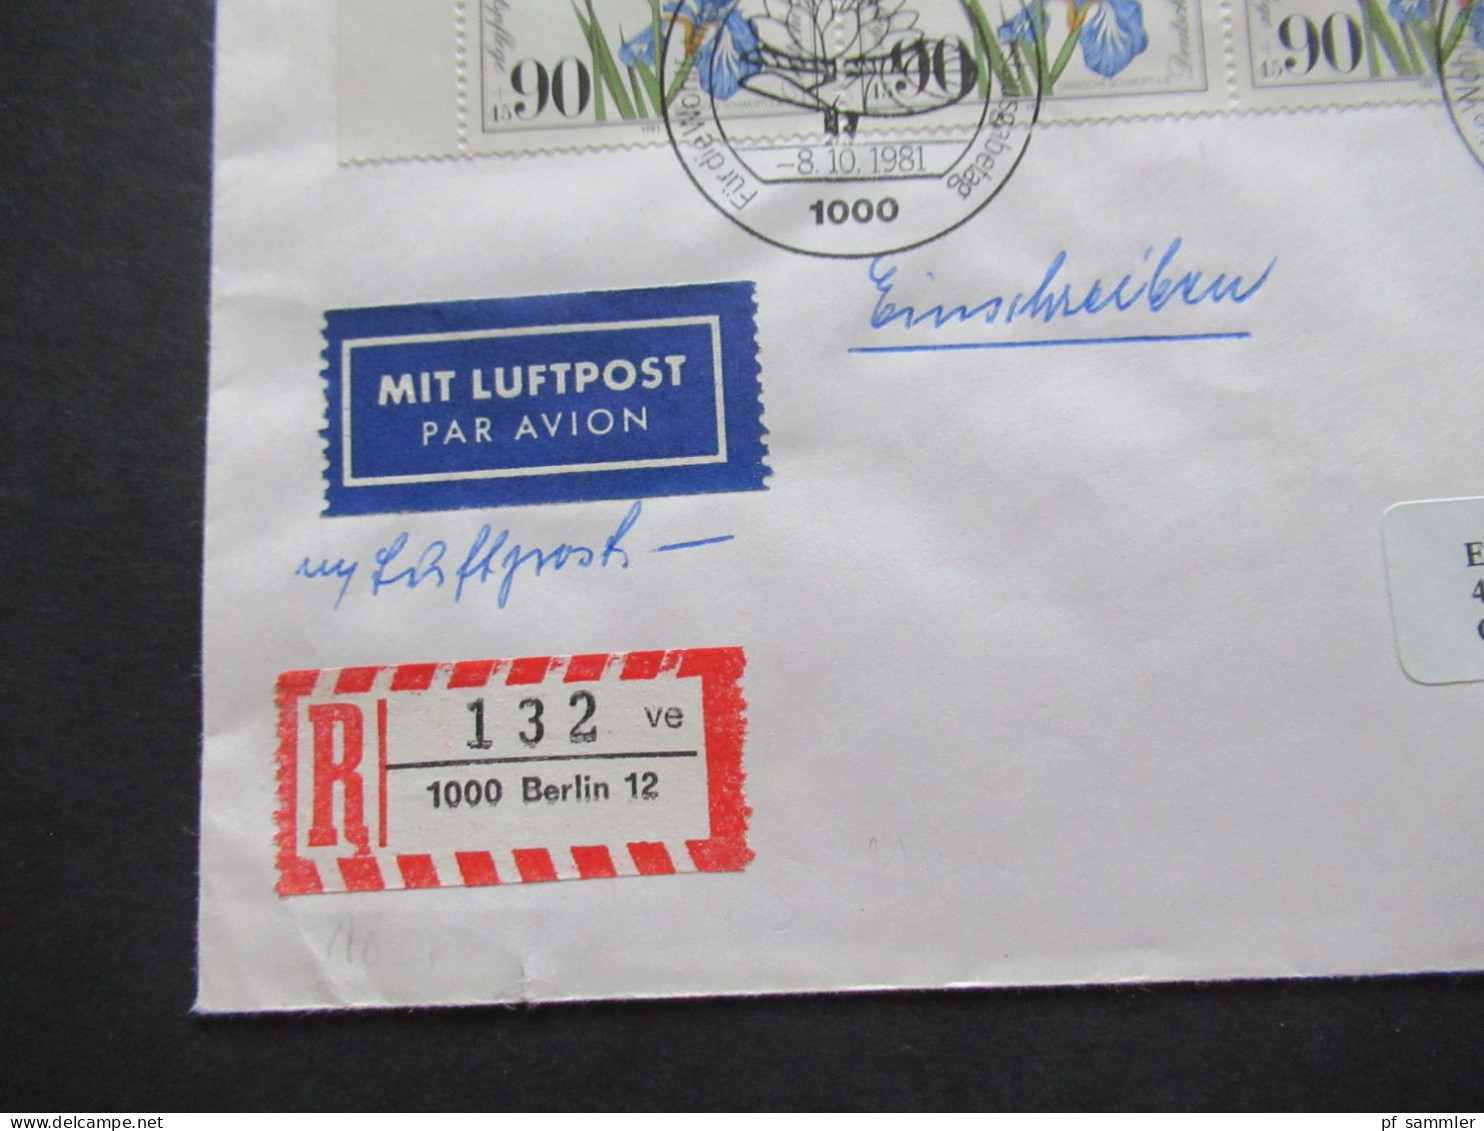 Berlin 1981 Wohlfahrt Nr.653 (4) Als 4er Block Eckrand OL MeF Auslandsbrief Einschreiben Berlin 12 Nach Chicago USA - Briefe U. Dokumente